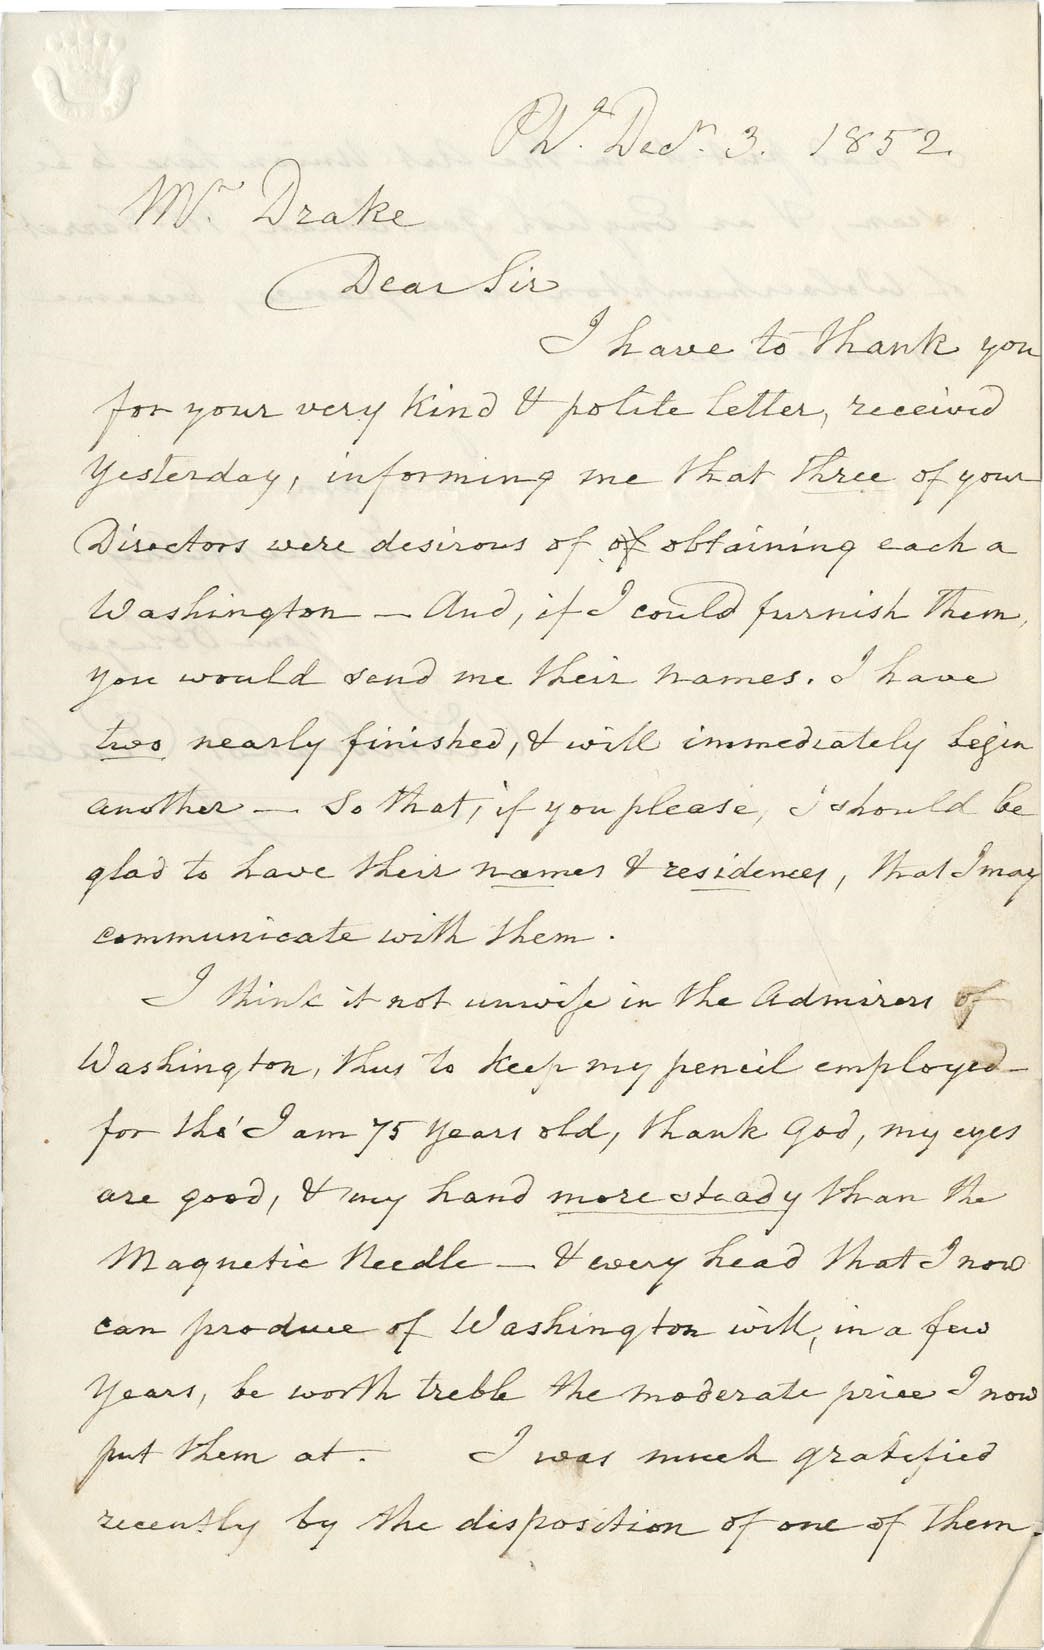 Rock And Pop Culture - (1778-1860) Artist Rembrandt Peale Handwritten Letter w/George Washington Content (PSA)